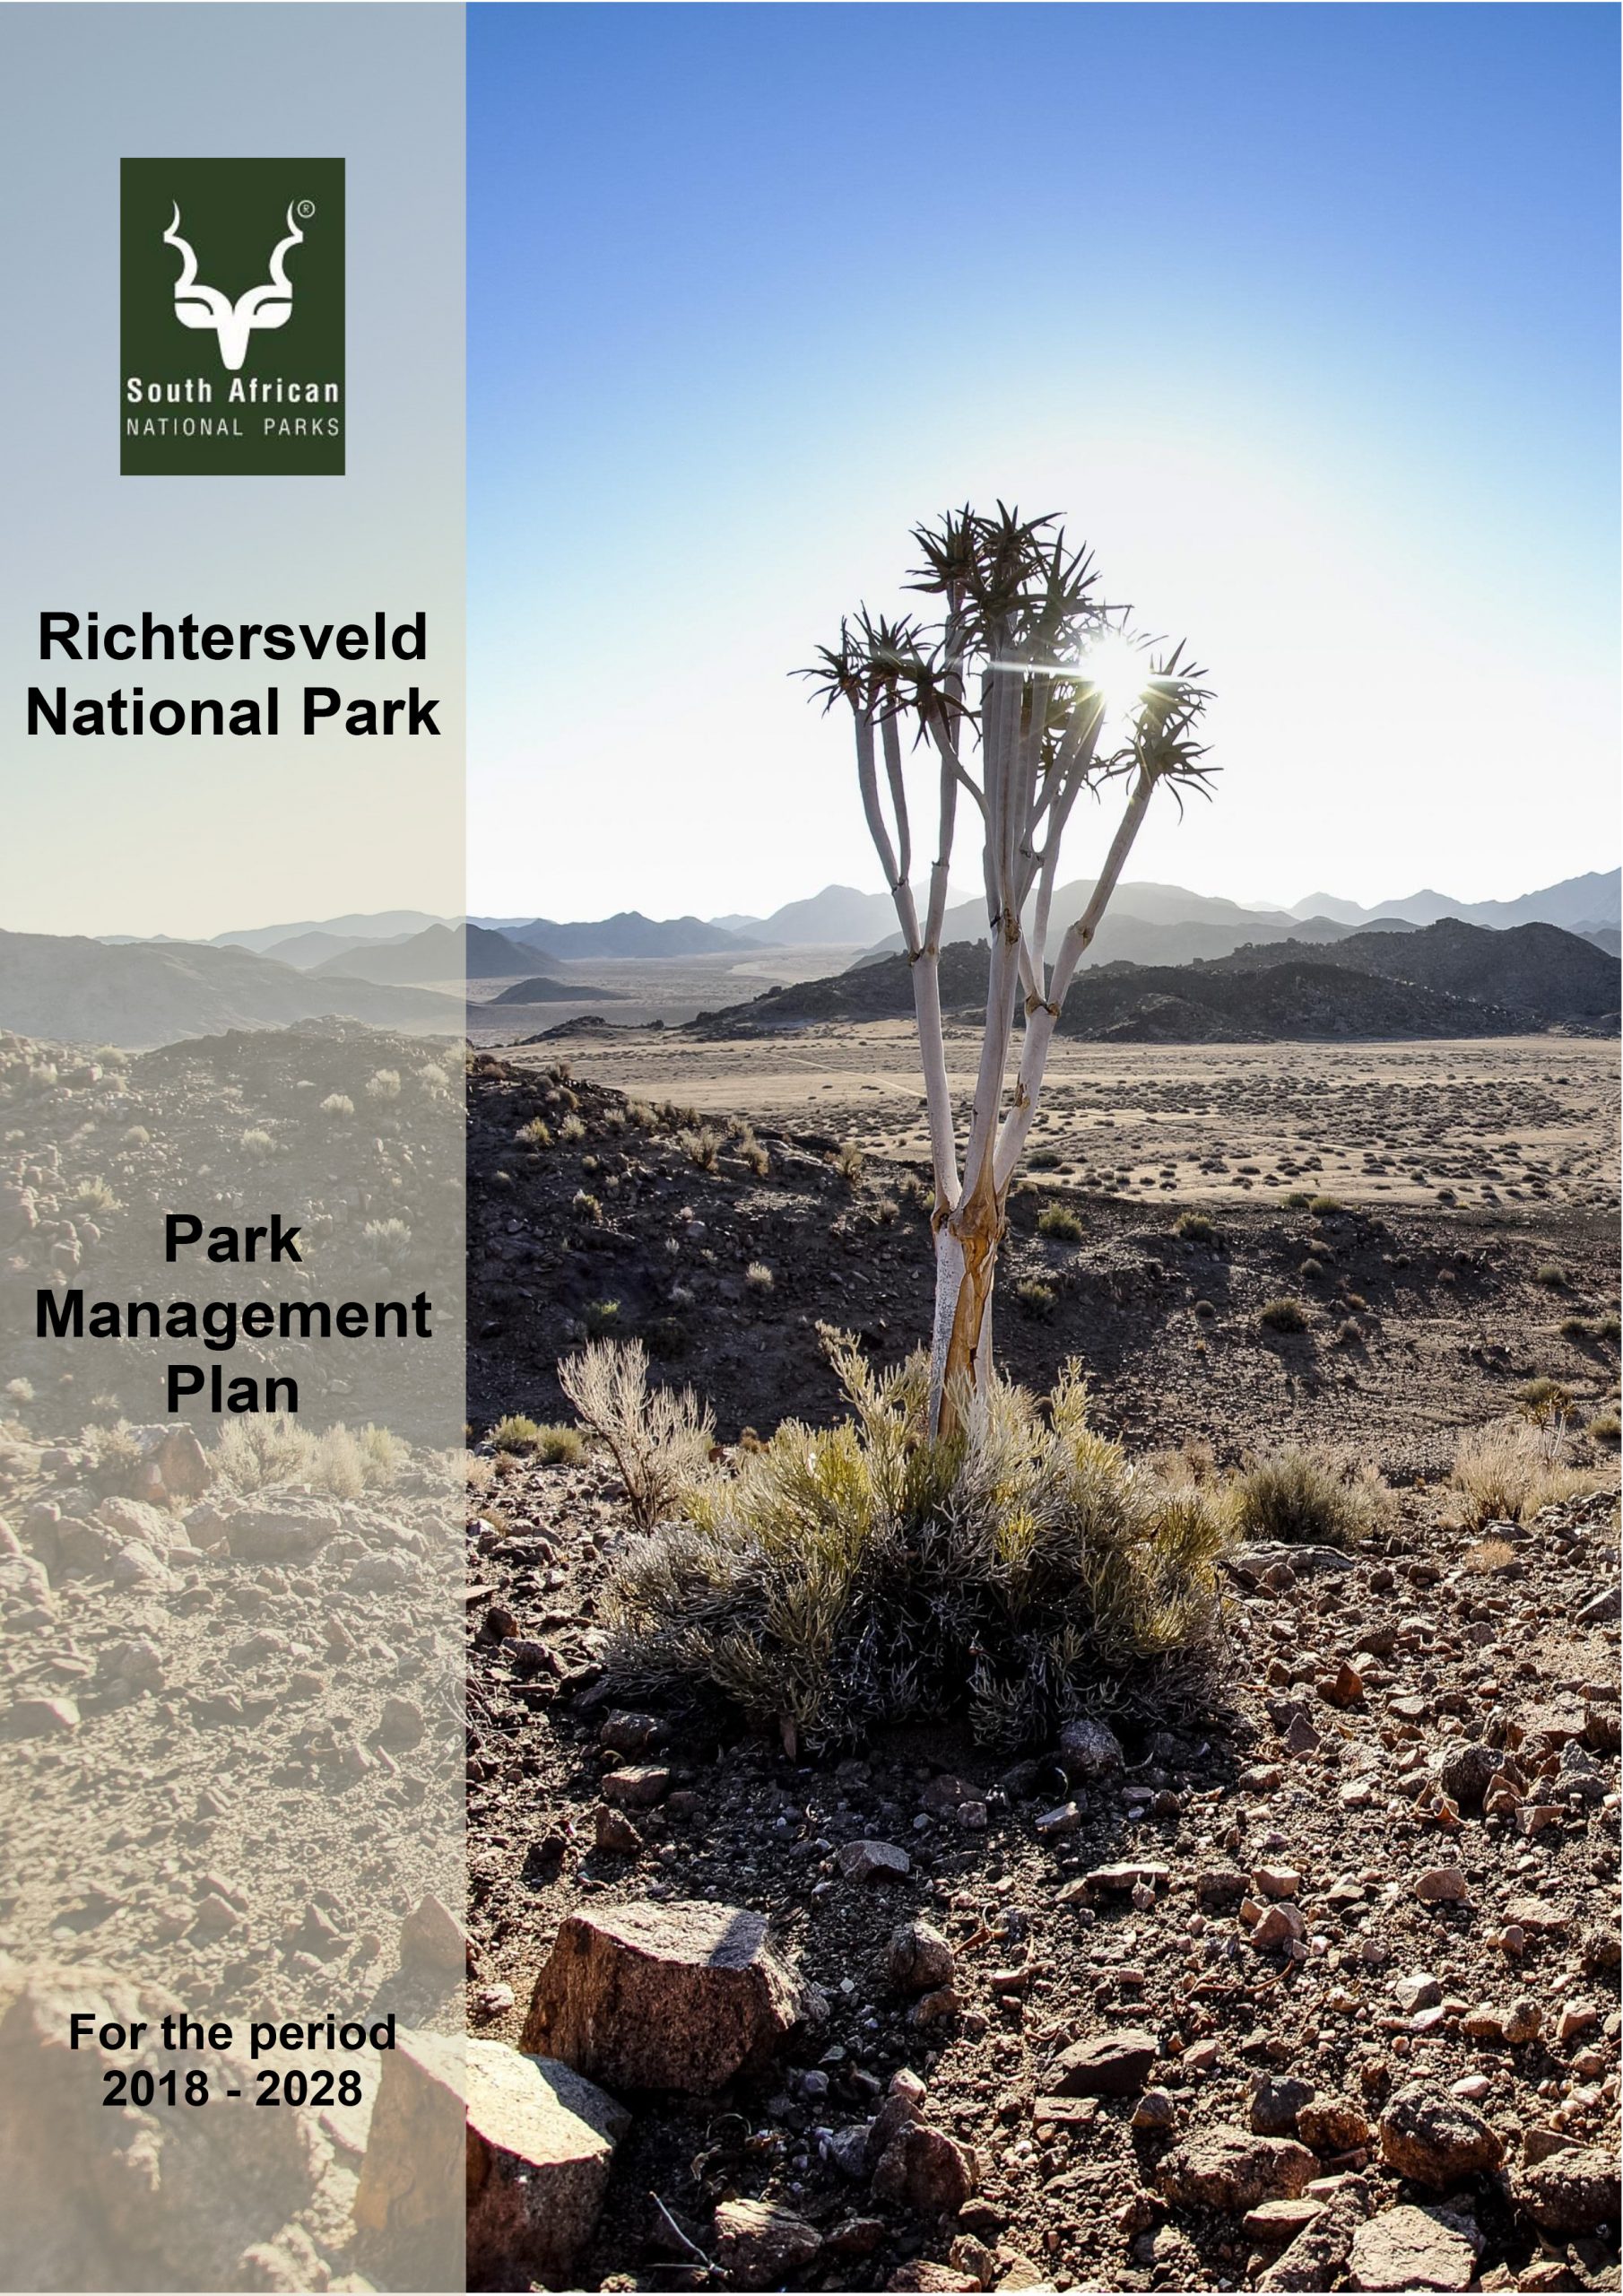 The Richersveld National Park – Park Management Plan